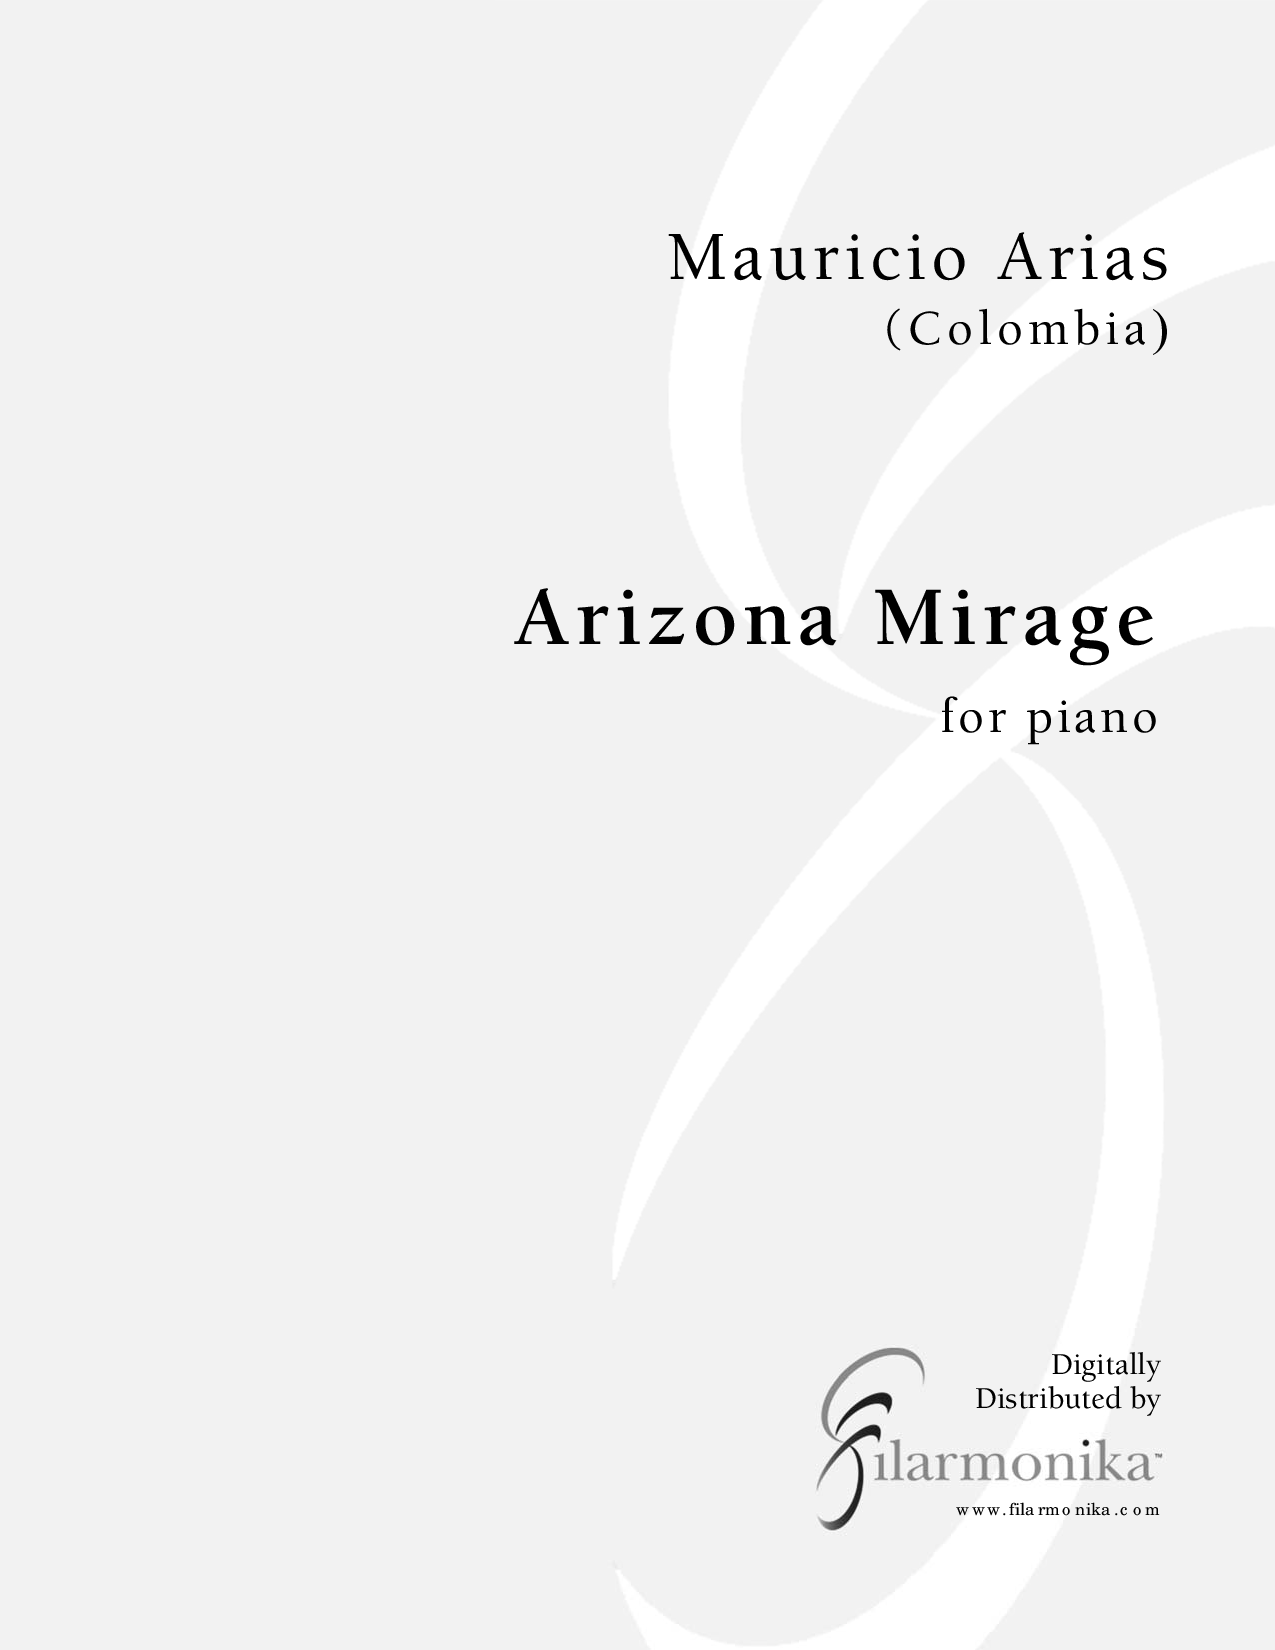 Arizona Mirage, for solo piano